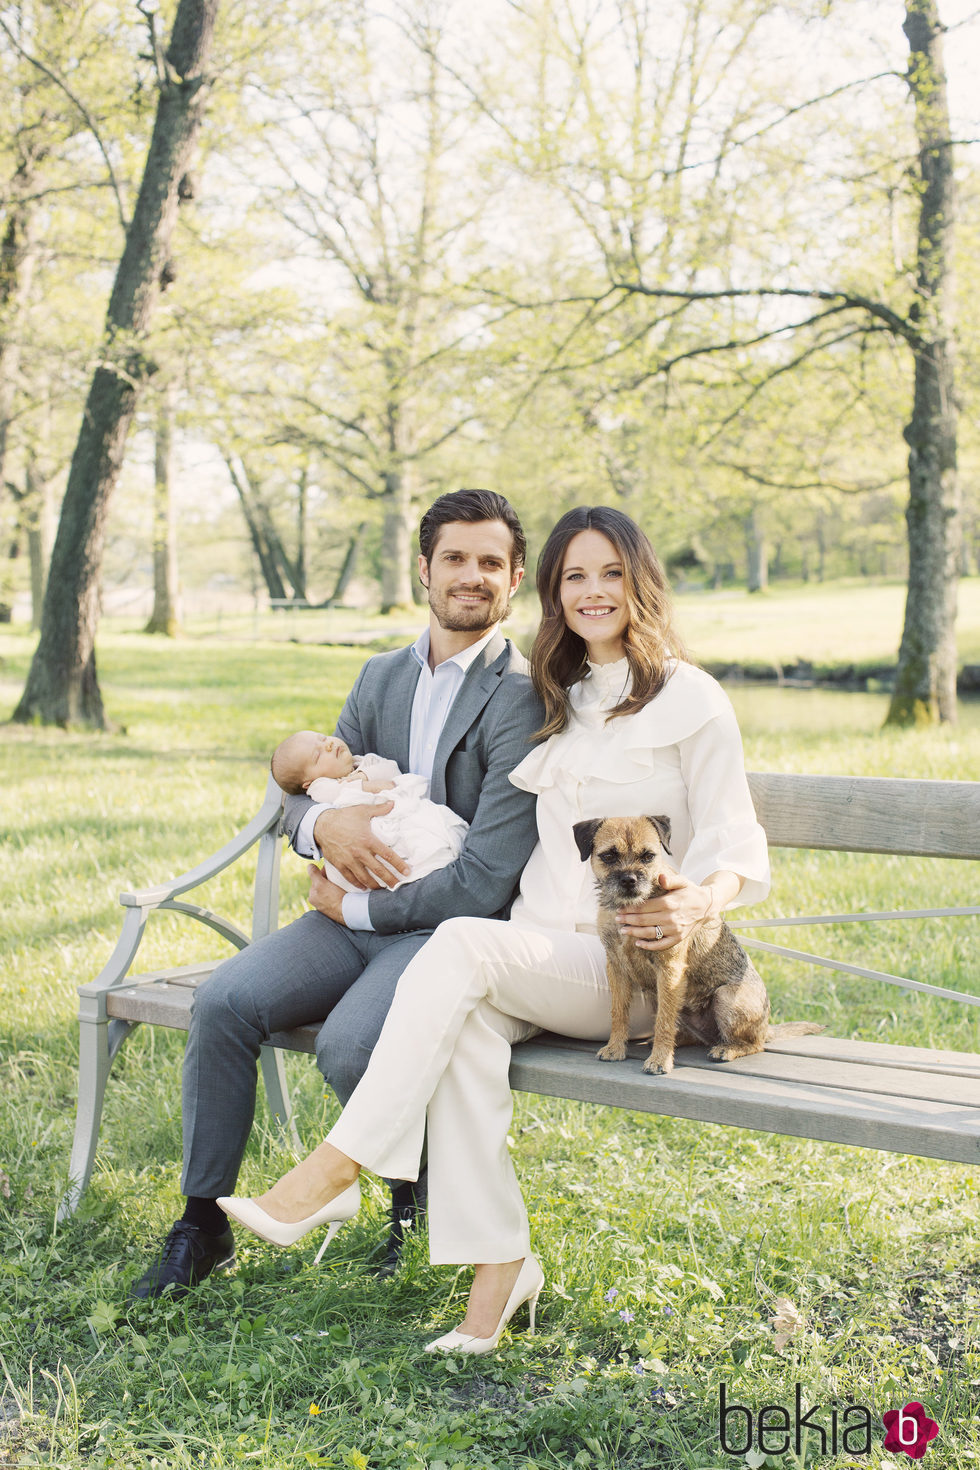 Carlos Felipe de Suecia y Sofia Hellqvist con su hijo Alejandro y su perro en los jardines del Palacio de Drottningholm